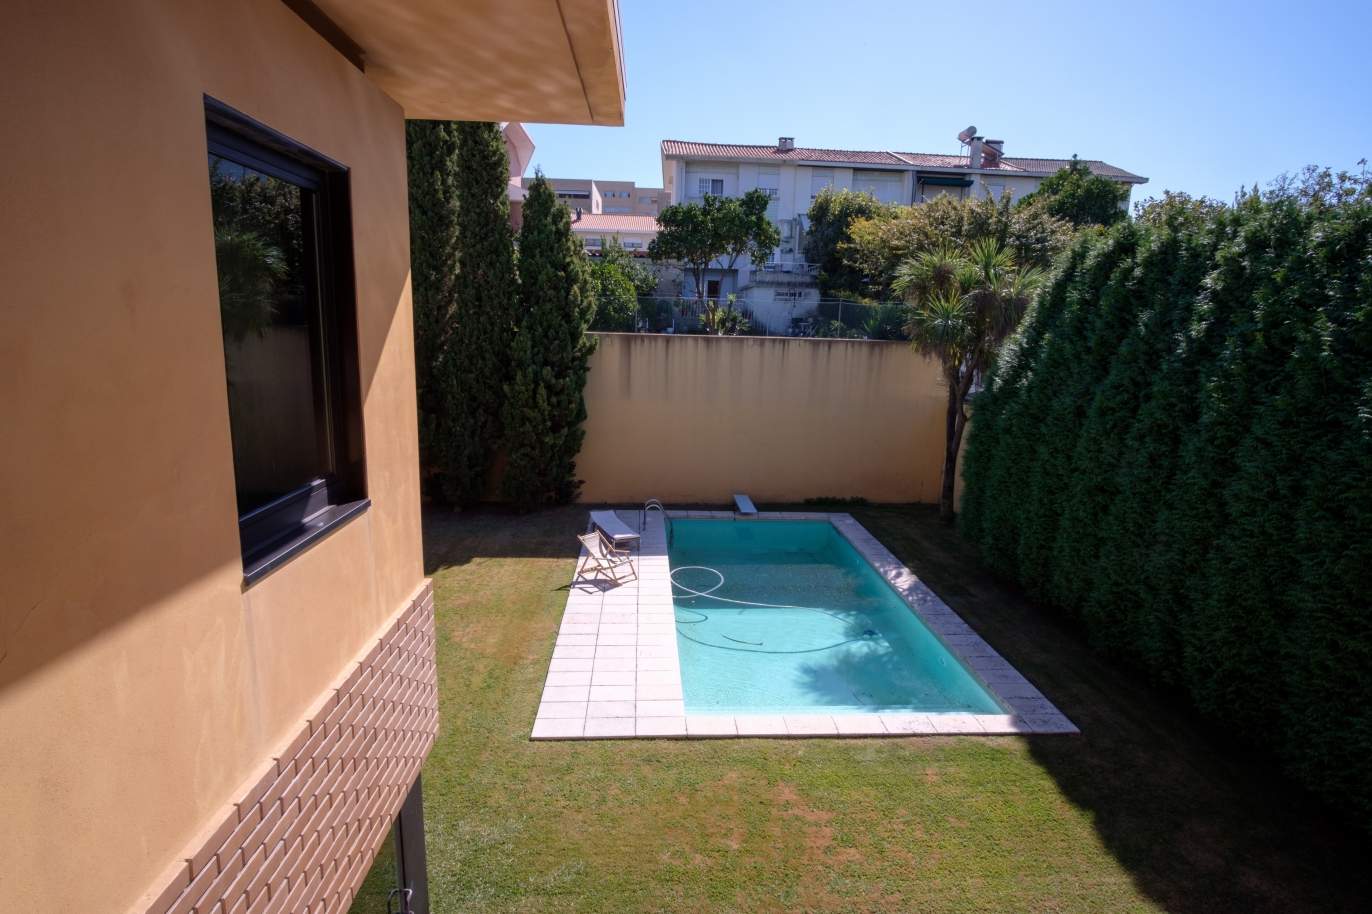 Verkauf von 4-Fronten-Villa mit Pool und Garten, S. Mamede Infesta_118966